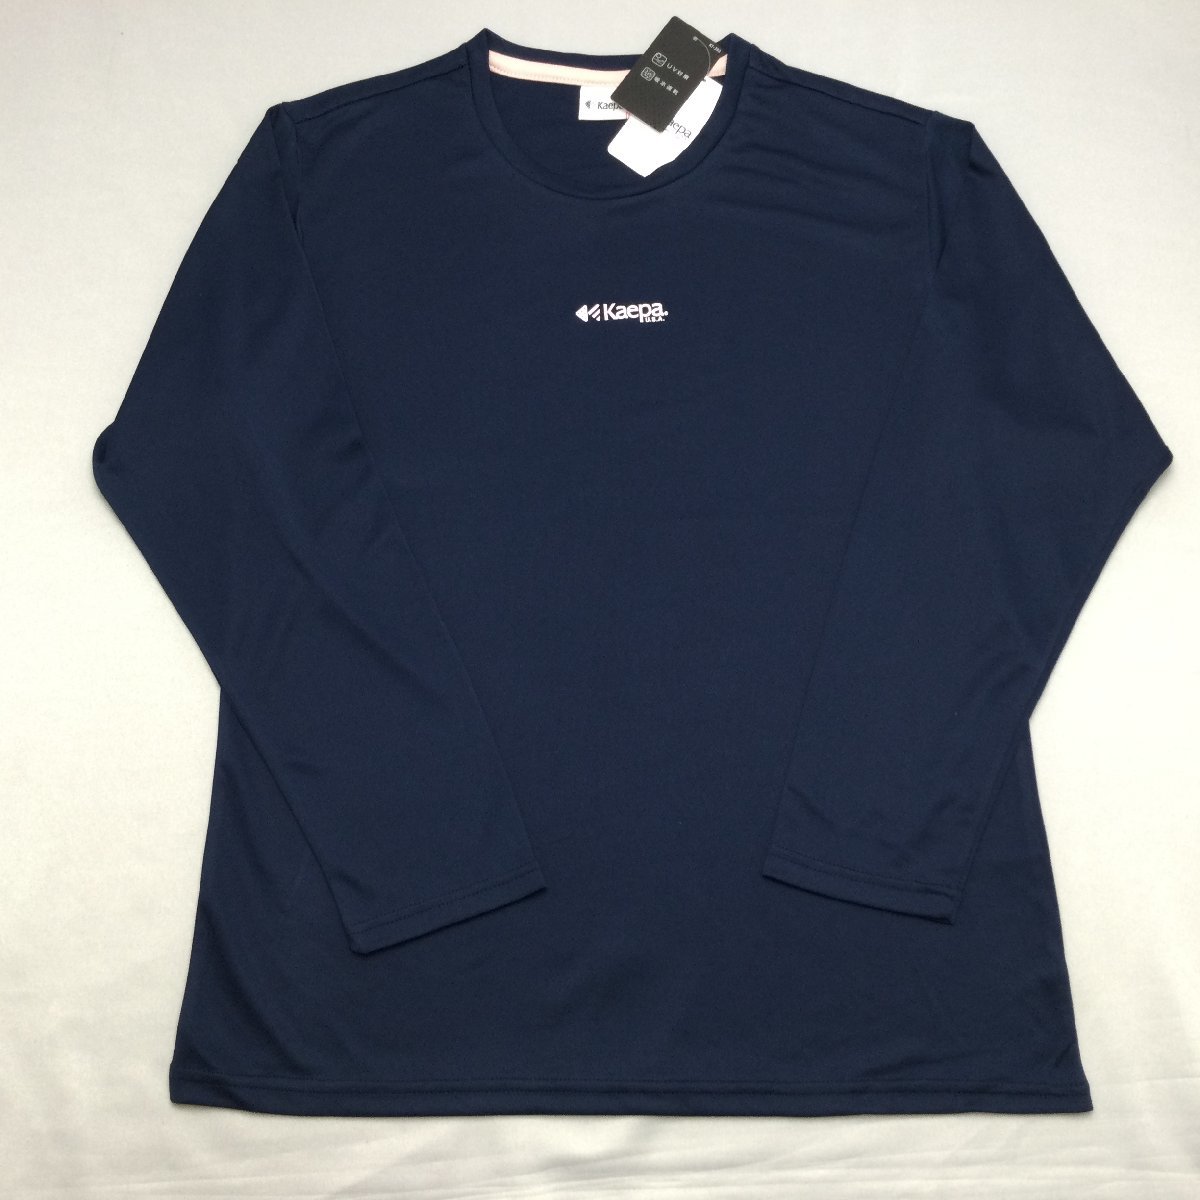 [ бесплатная доставка ][ новый товар ]Kaepa женский футболка с длинным рукавом (. вода скорость .UV cut ) 4L темно-синий *581231